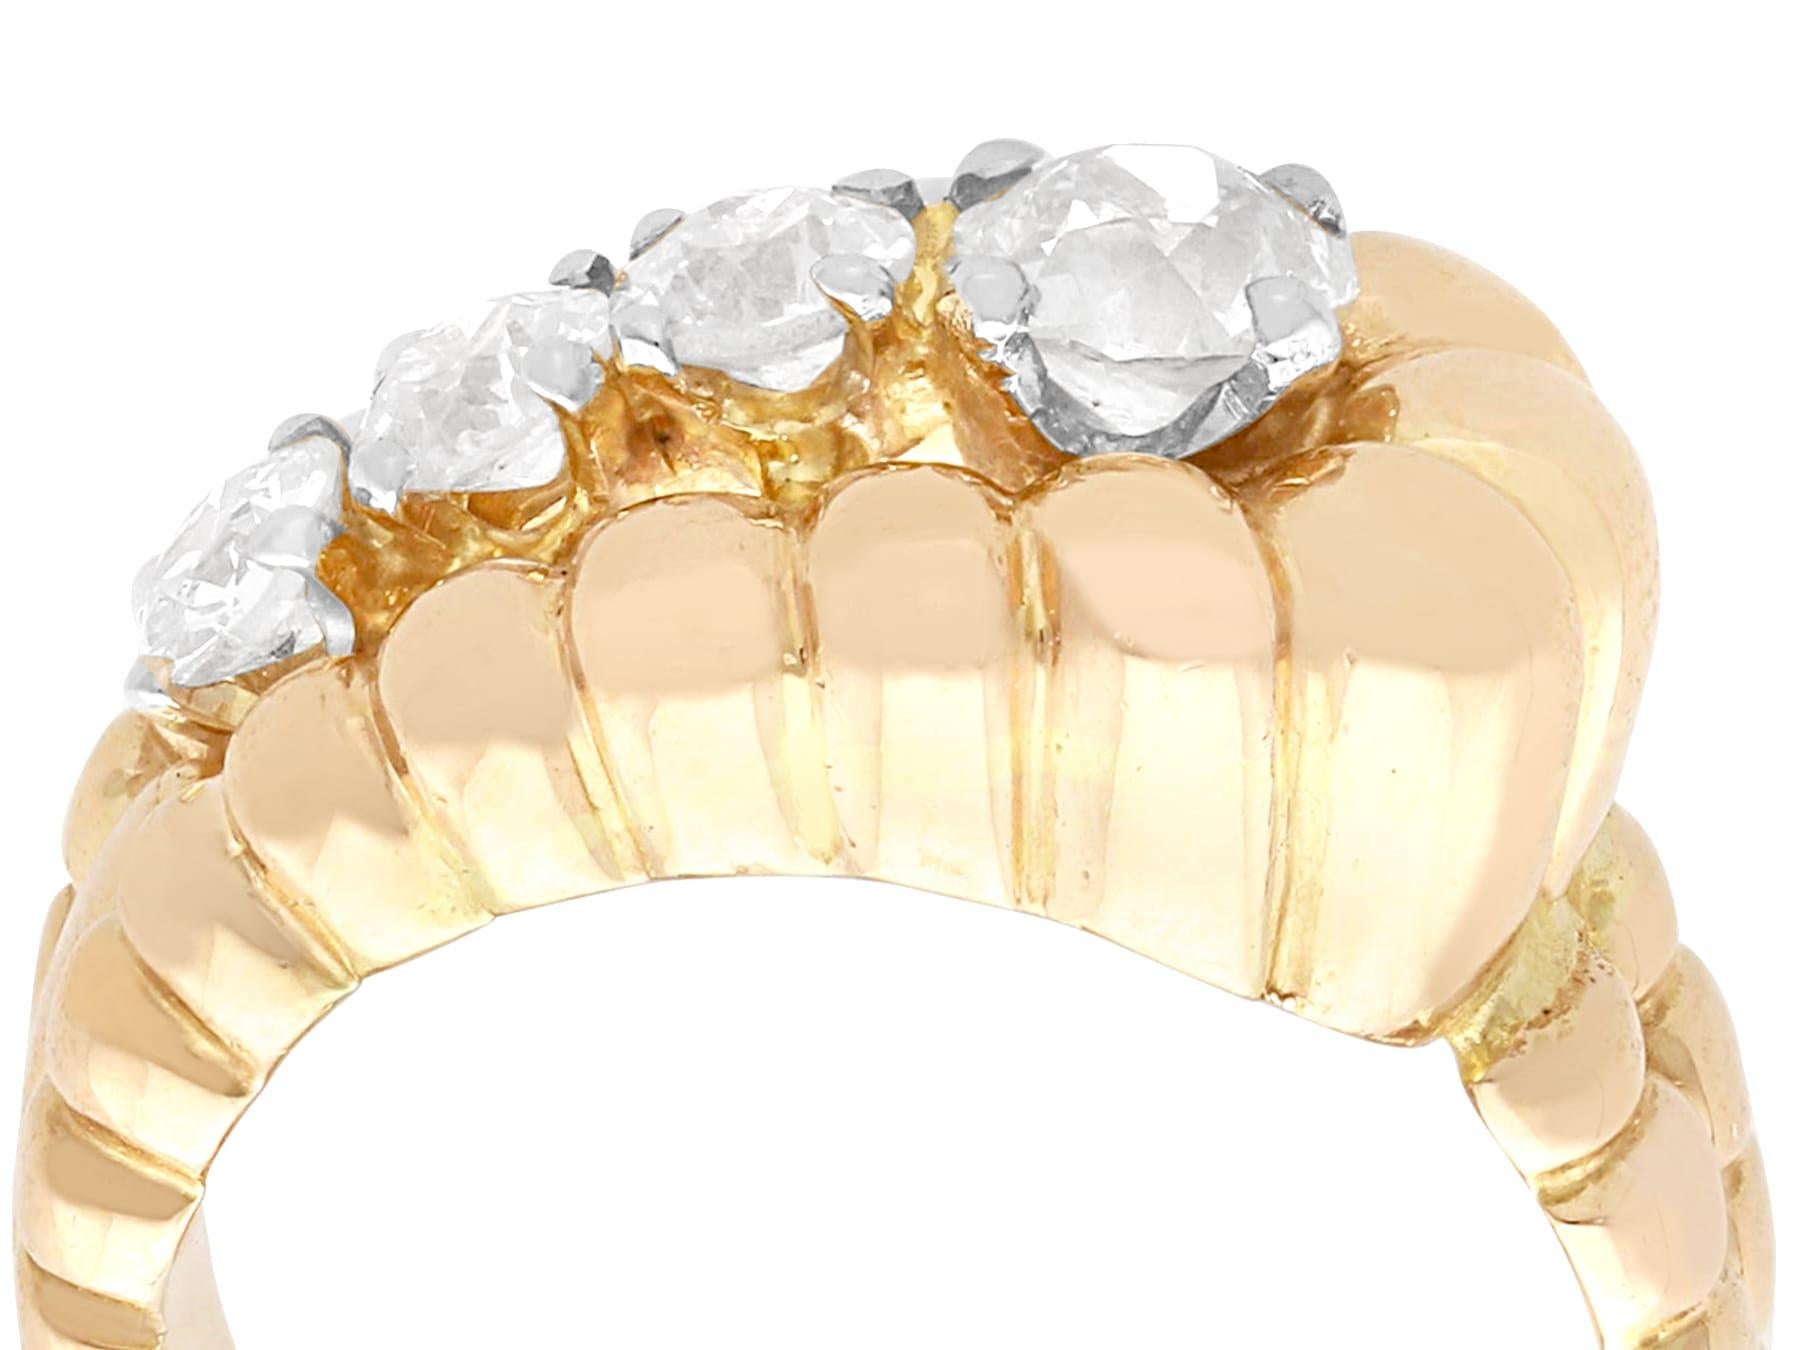 Ein feiner und beeindruckender Vintage-Ring aus 1,80 Karat Diamanten und 18 Karat Gelbgold; Teil unserer vielfältigen Diamantschmuck-Kollektionen.

Dieser schöne und beeindruckende Vintage-Diamantring ist aus 18 Karat Gelbgold gefertigt.

Der